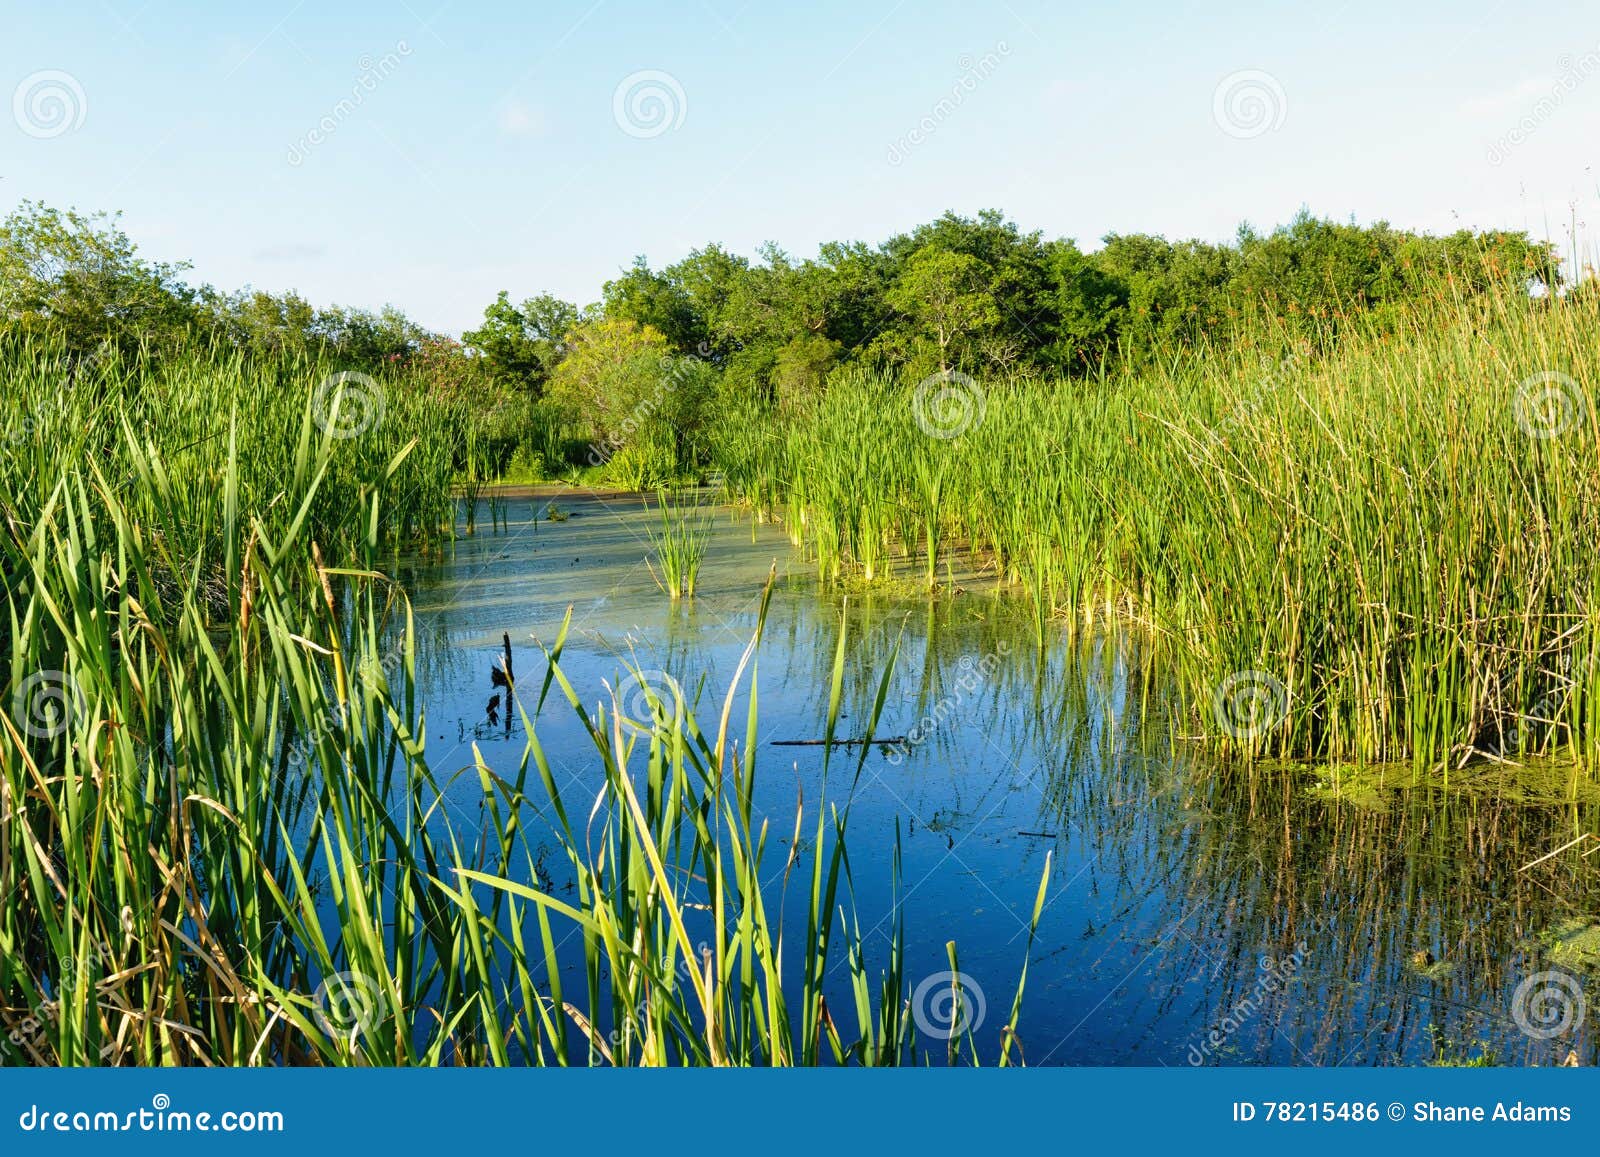 the louisiana marsh